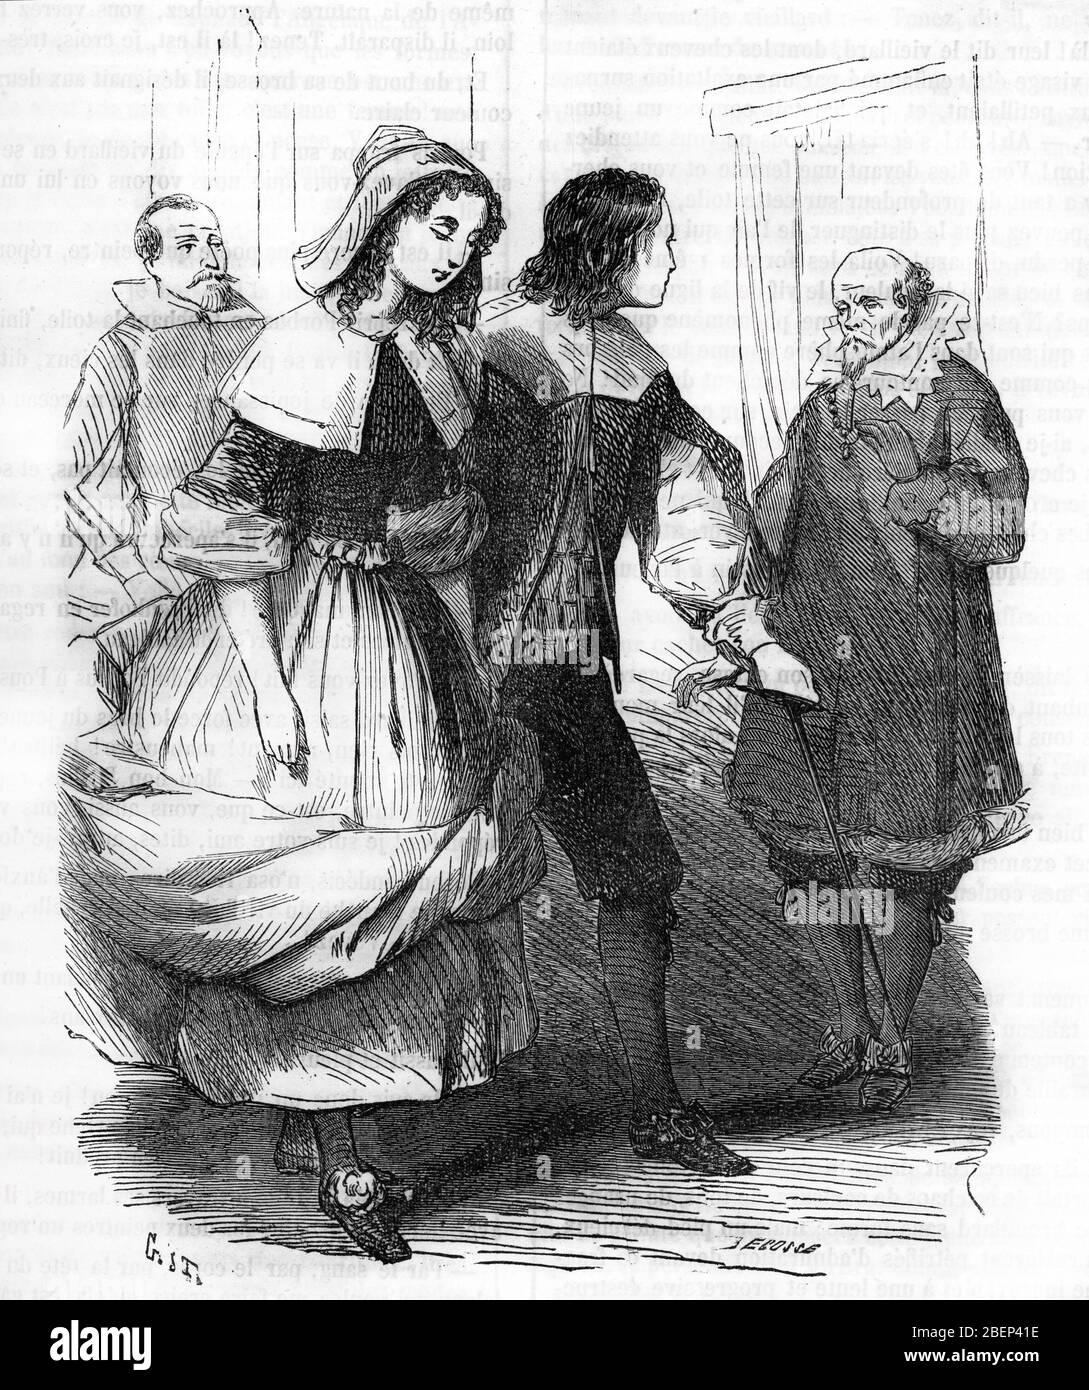 Nicolas Poussin accompagne de sa bien aimee la Belle Gillette venue poser pour le tableau 'La belle noiseuse' du vieux peintre Frenhofer (The old pain Stock Photo